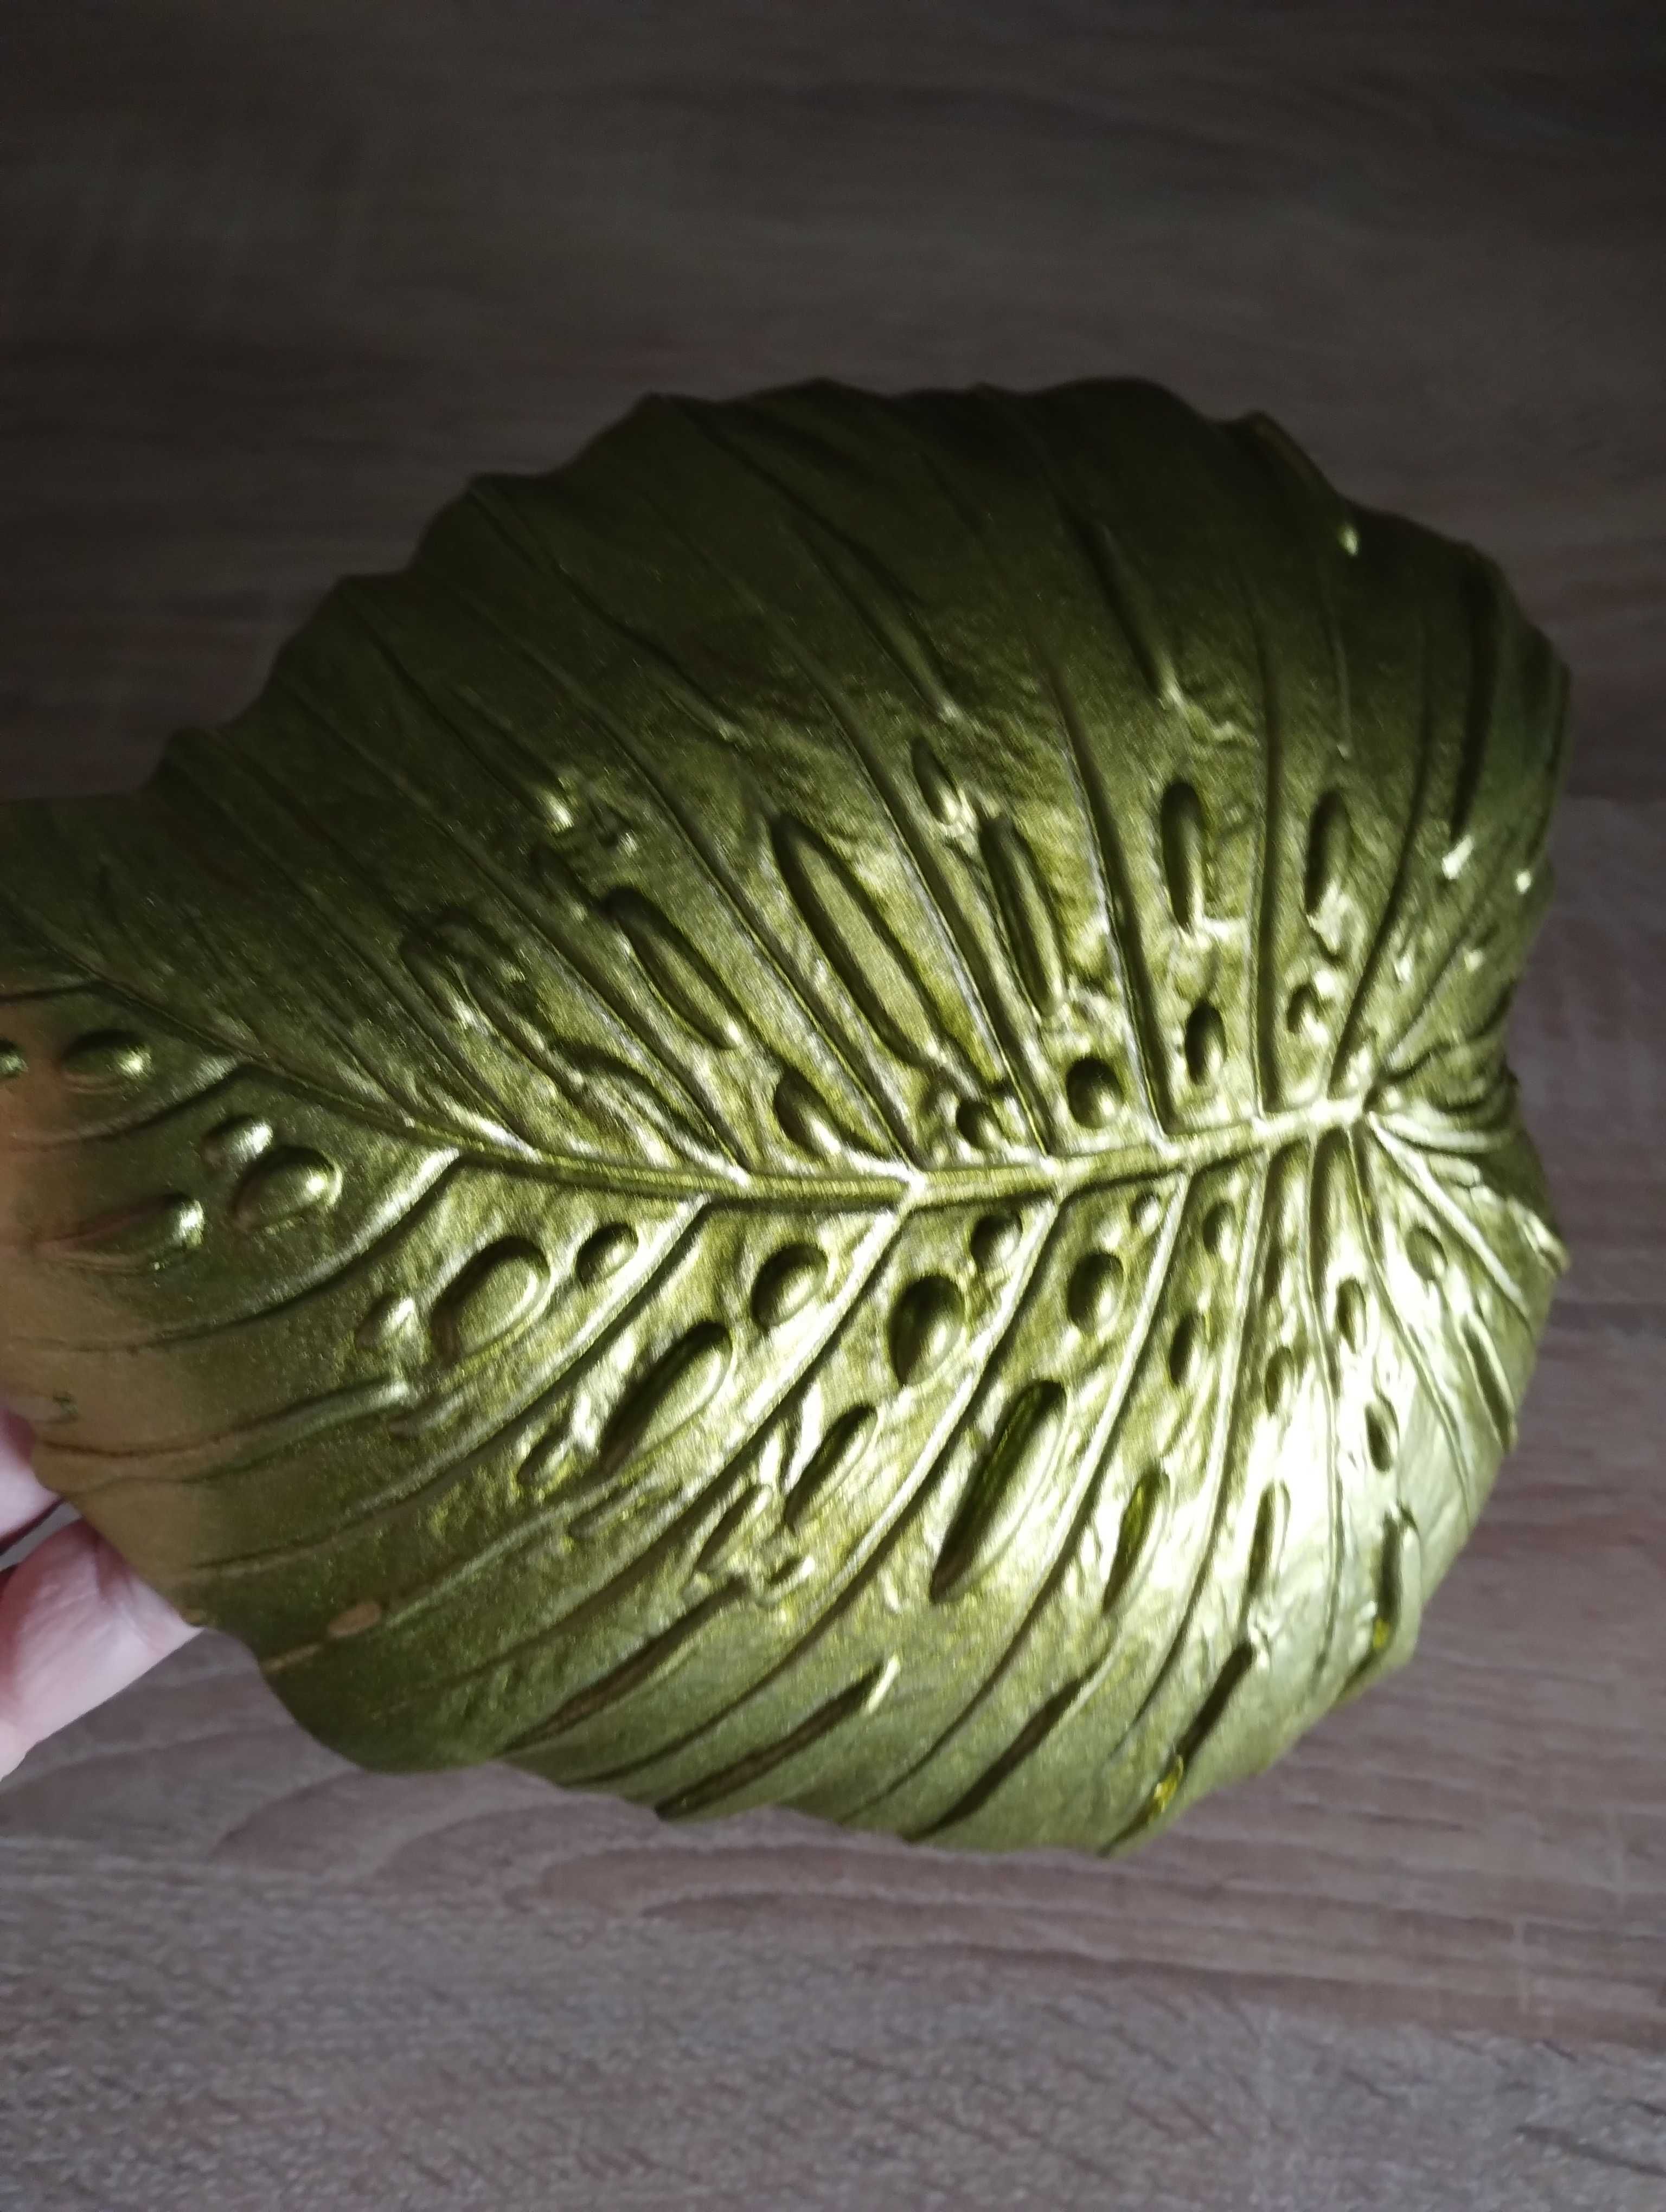 Nowy ozdobny talerz w kształcie liścia